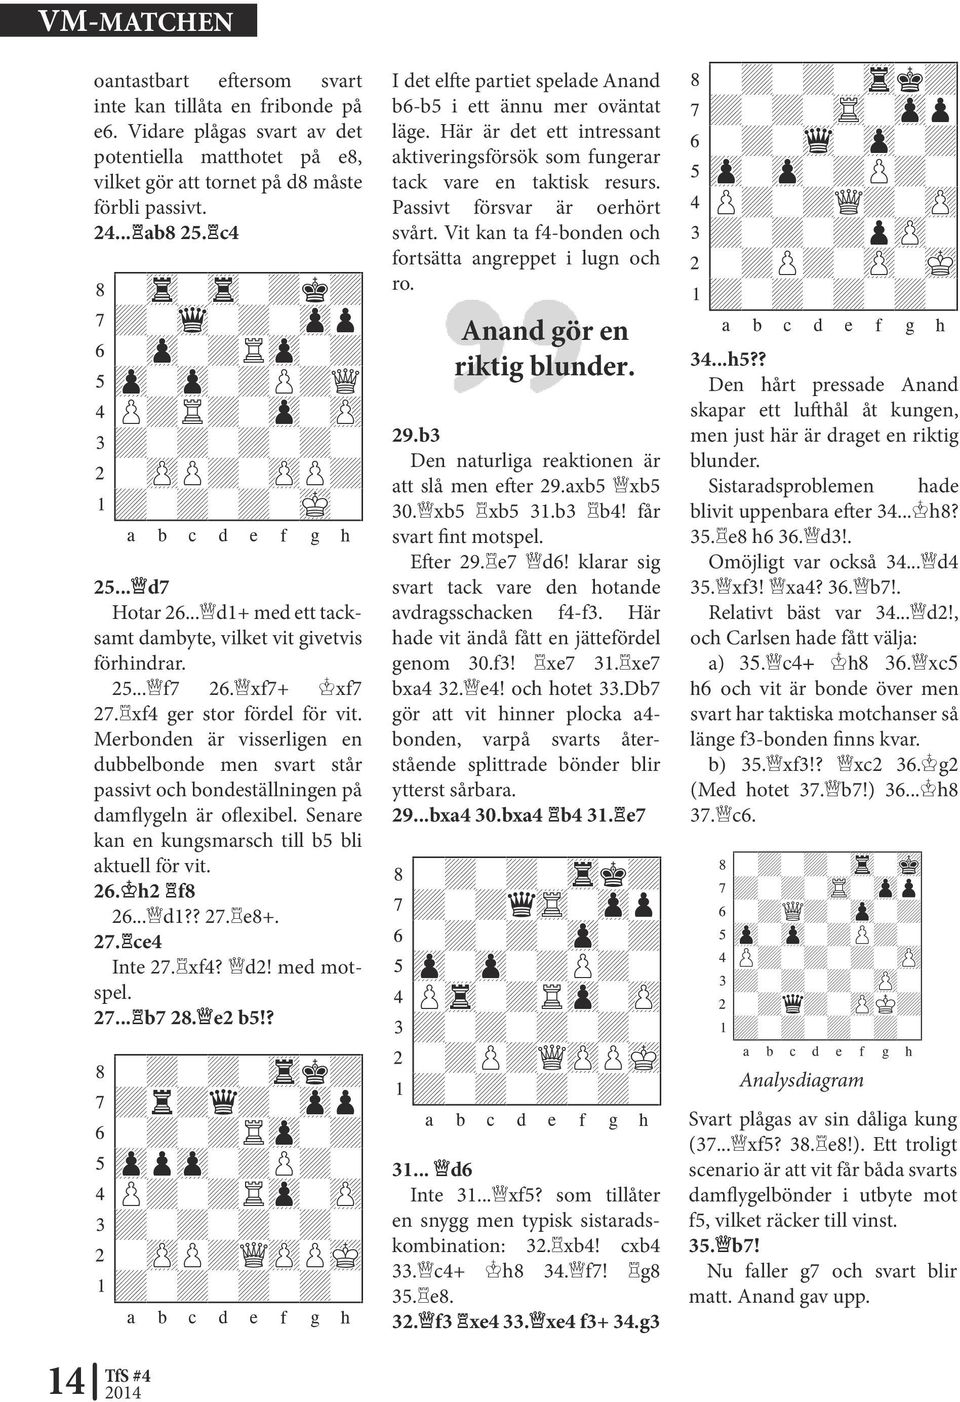 xf4 ger stor fördel för vit. Merbonden är visserligen en dubbelbonde men svart står passivt och bondeställningen på damflygeln är oflexibel. Senare kan en kungsmarsch till b5 bli aktuell för vit. 26.